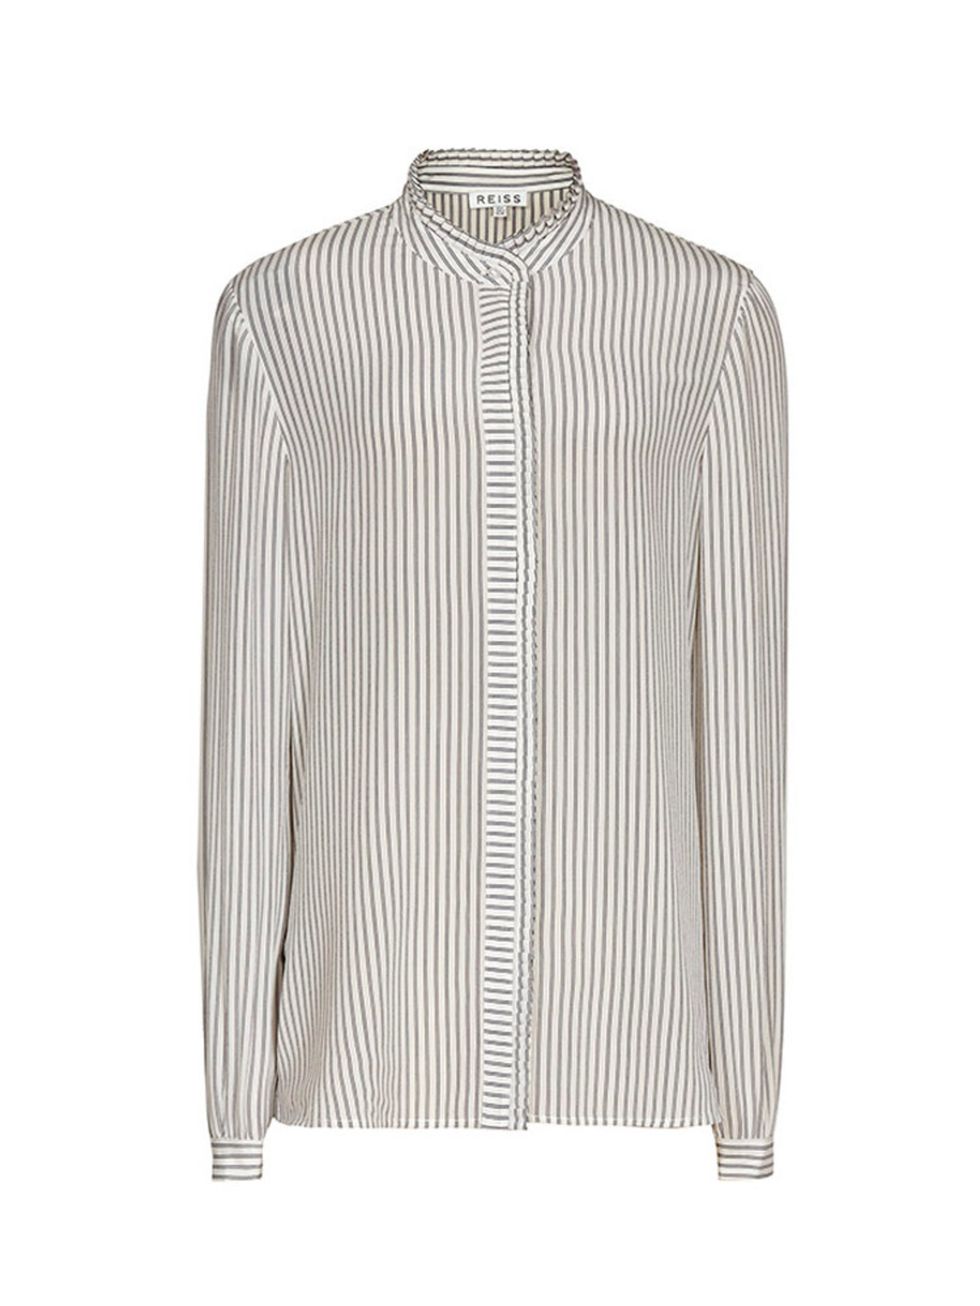 <p><a href="http://www.reiss.com/womens/tops/maggie/blue-stripe/" target="_blank">Reiss shirt</a>, £135</p>